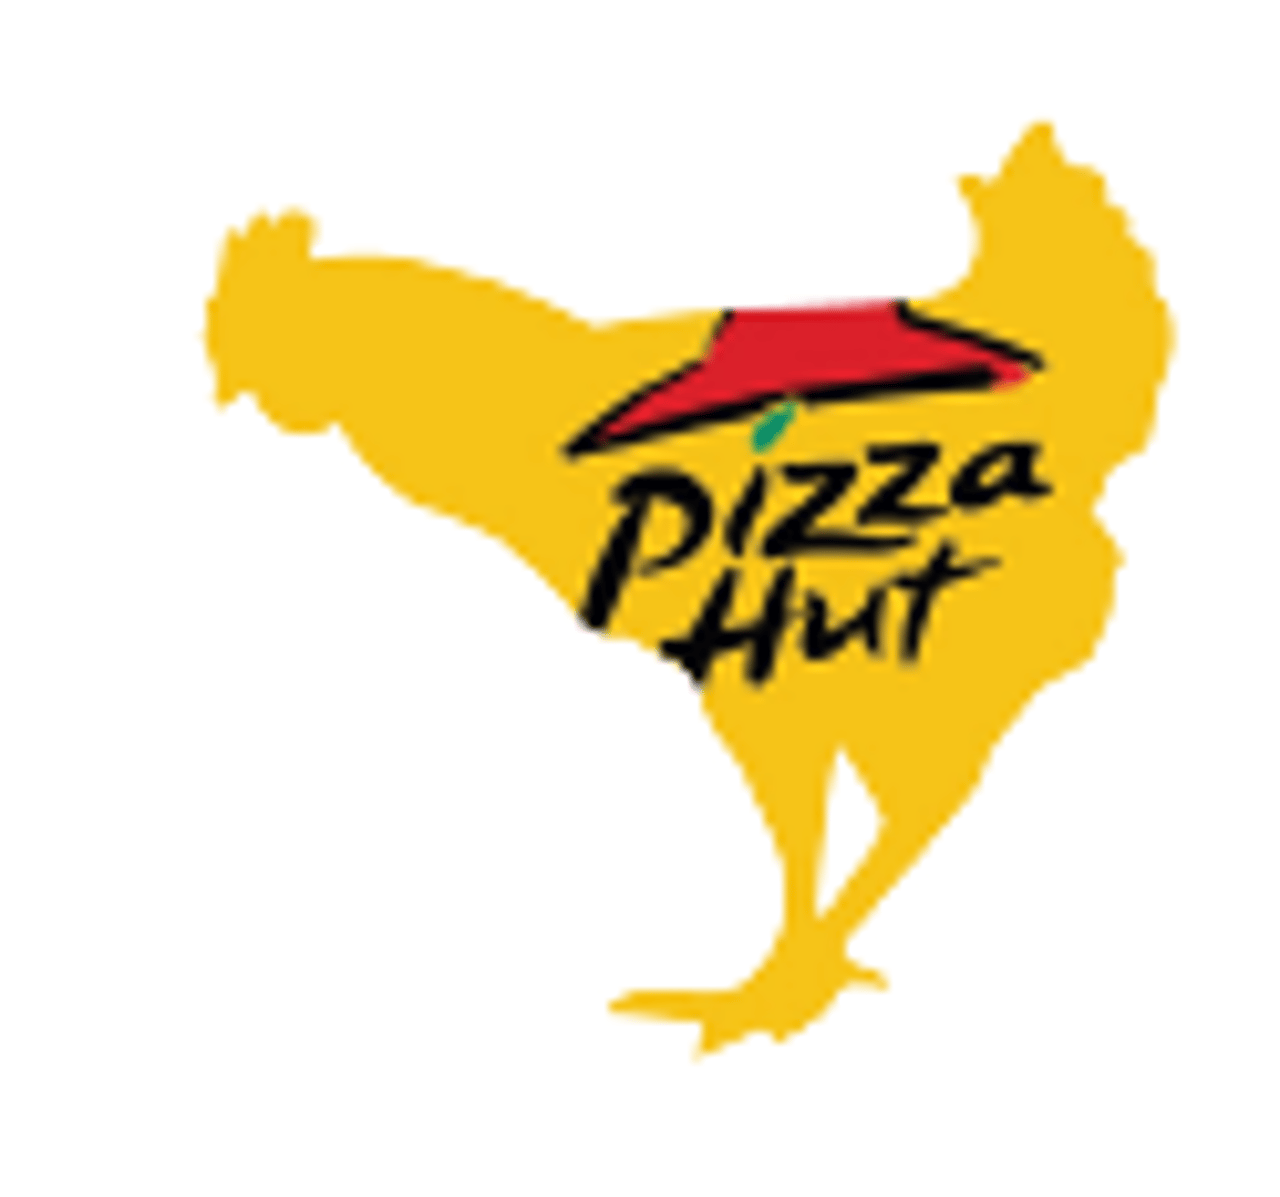 pizza_hut